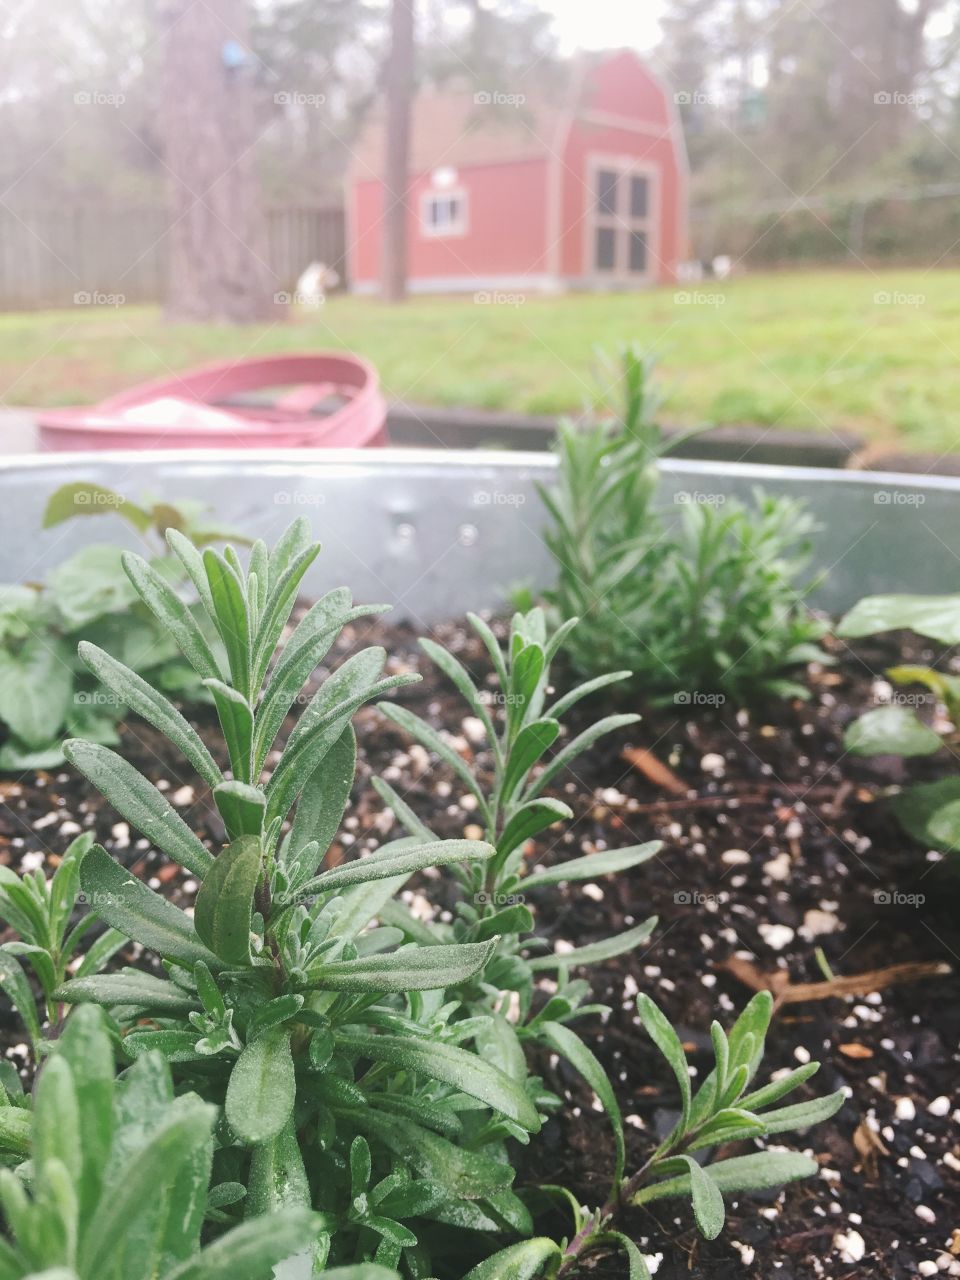 Backyard gardening//lavender//rainy morning